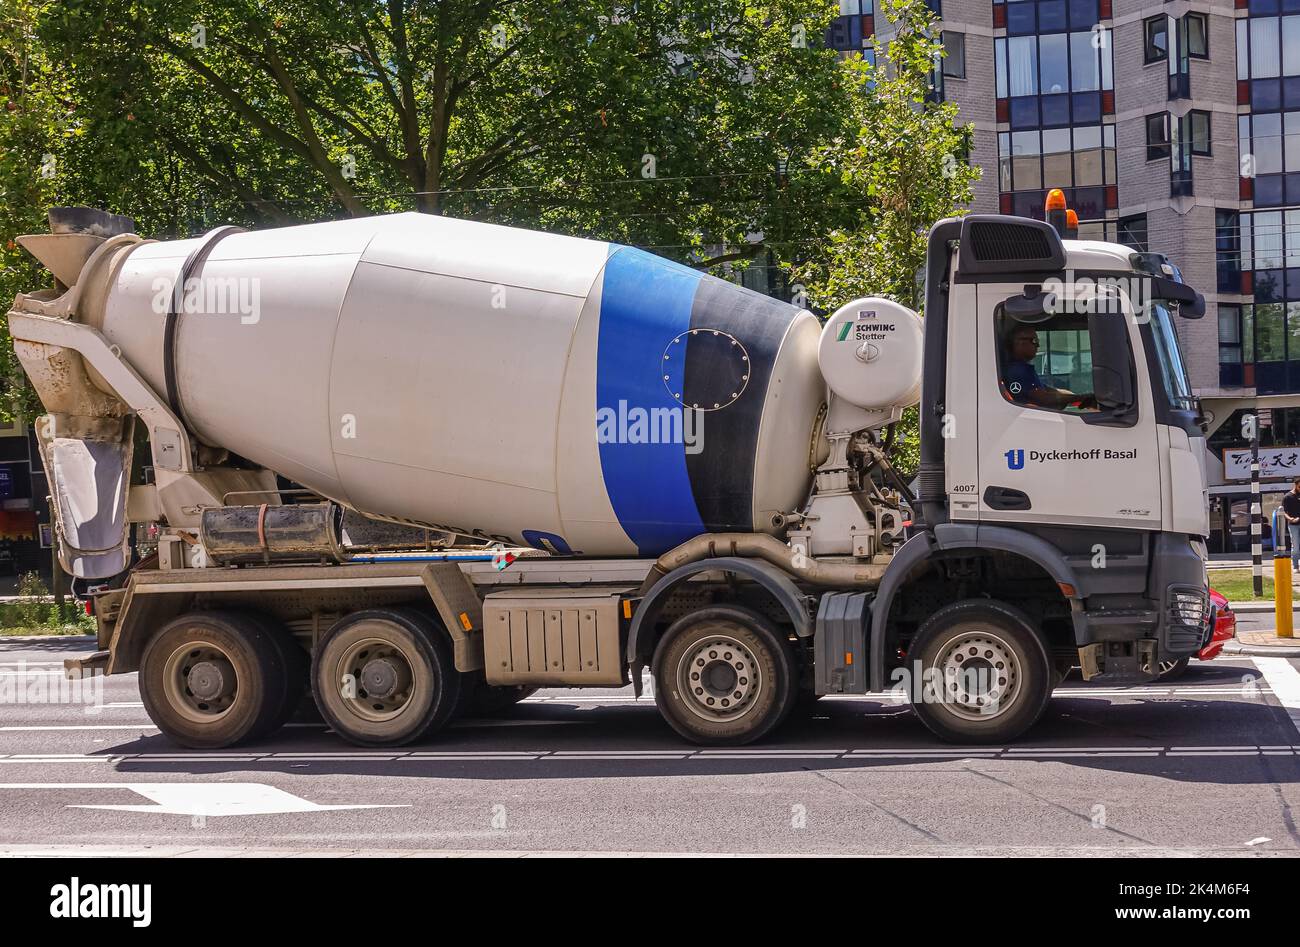 Rotterdam, pays-Bas - 11 juillet 2022: Gros plan du camion de l'usine de béton blanc-bleu contre le feuillage vert sur la route Banque D'Images